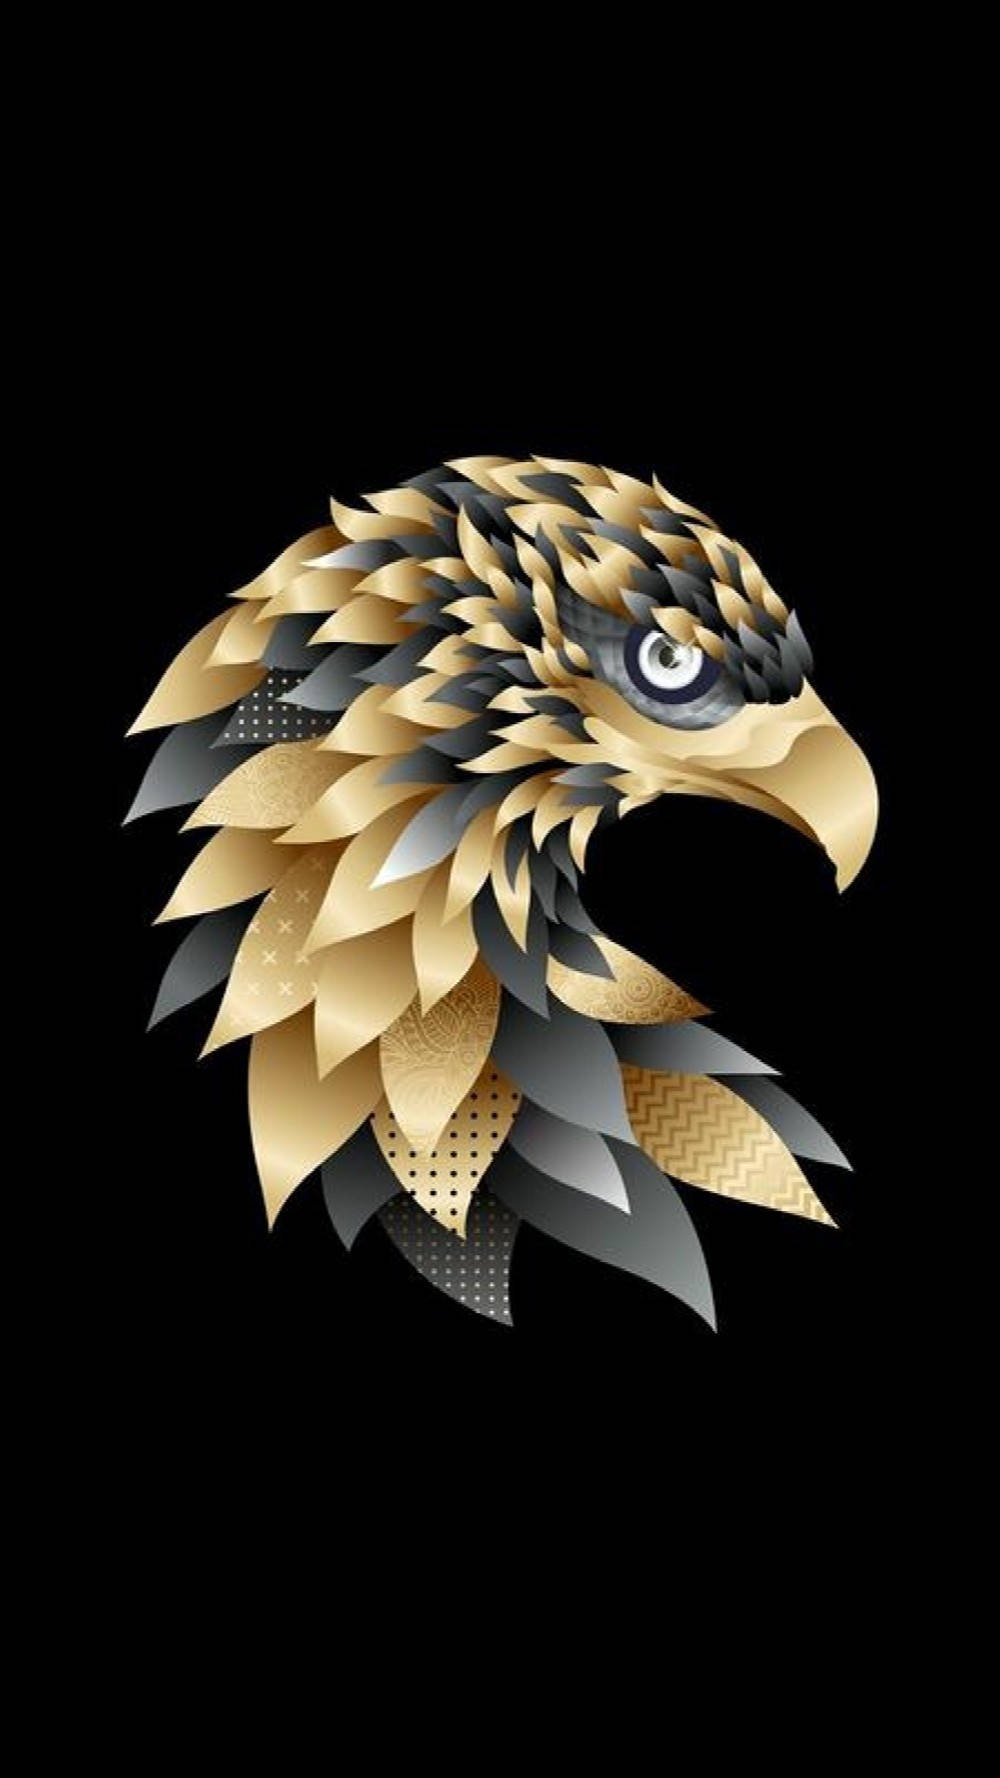 Artegeométrico De Águila En Dorado Y Negro. Fondo de pantalla